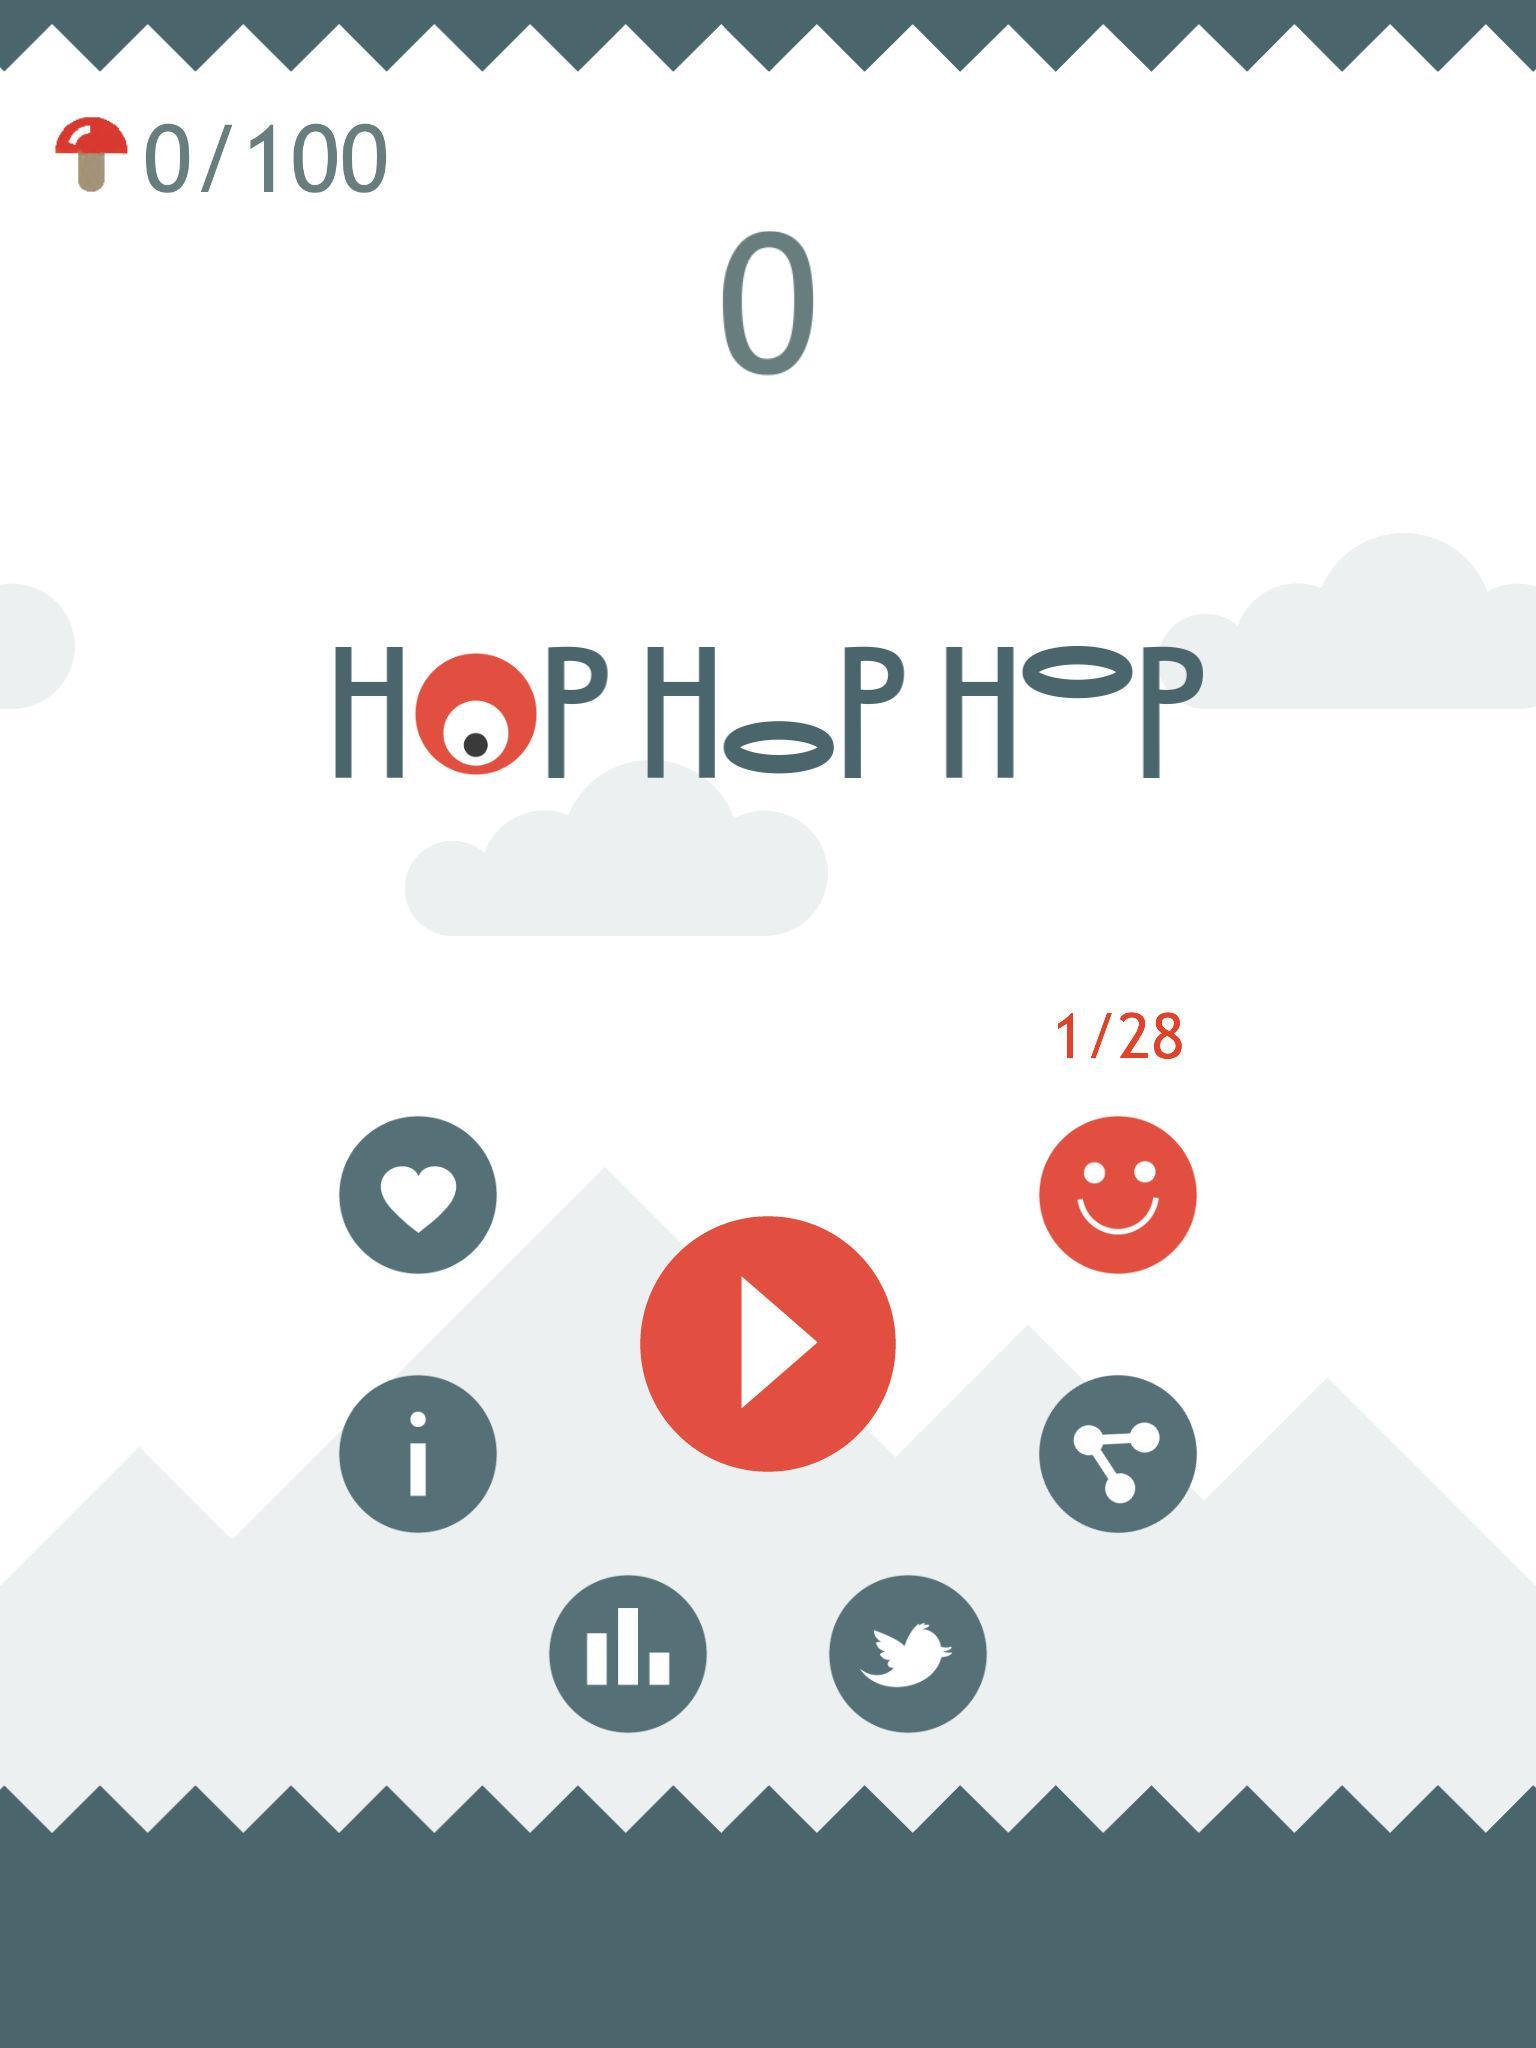 Hop Hop Hop 1.4 Screenshot 12